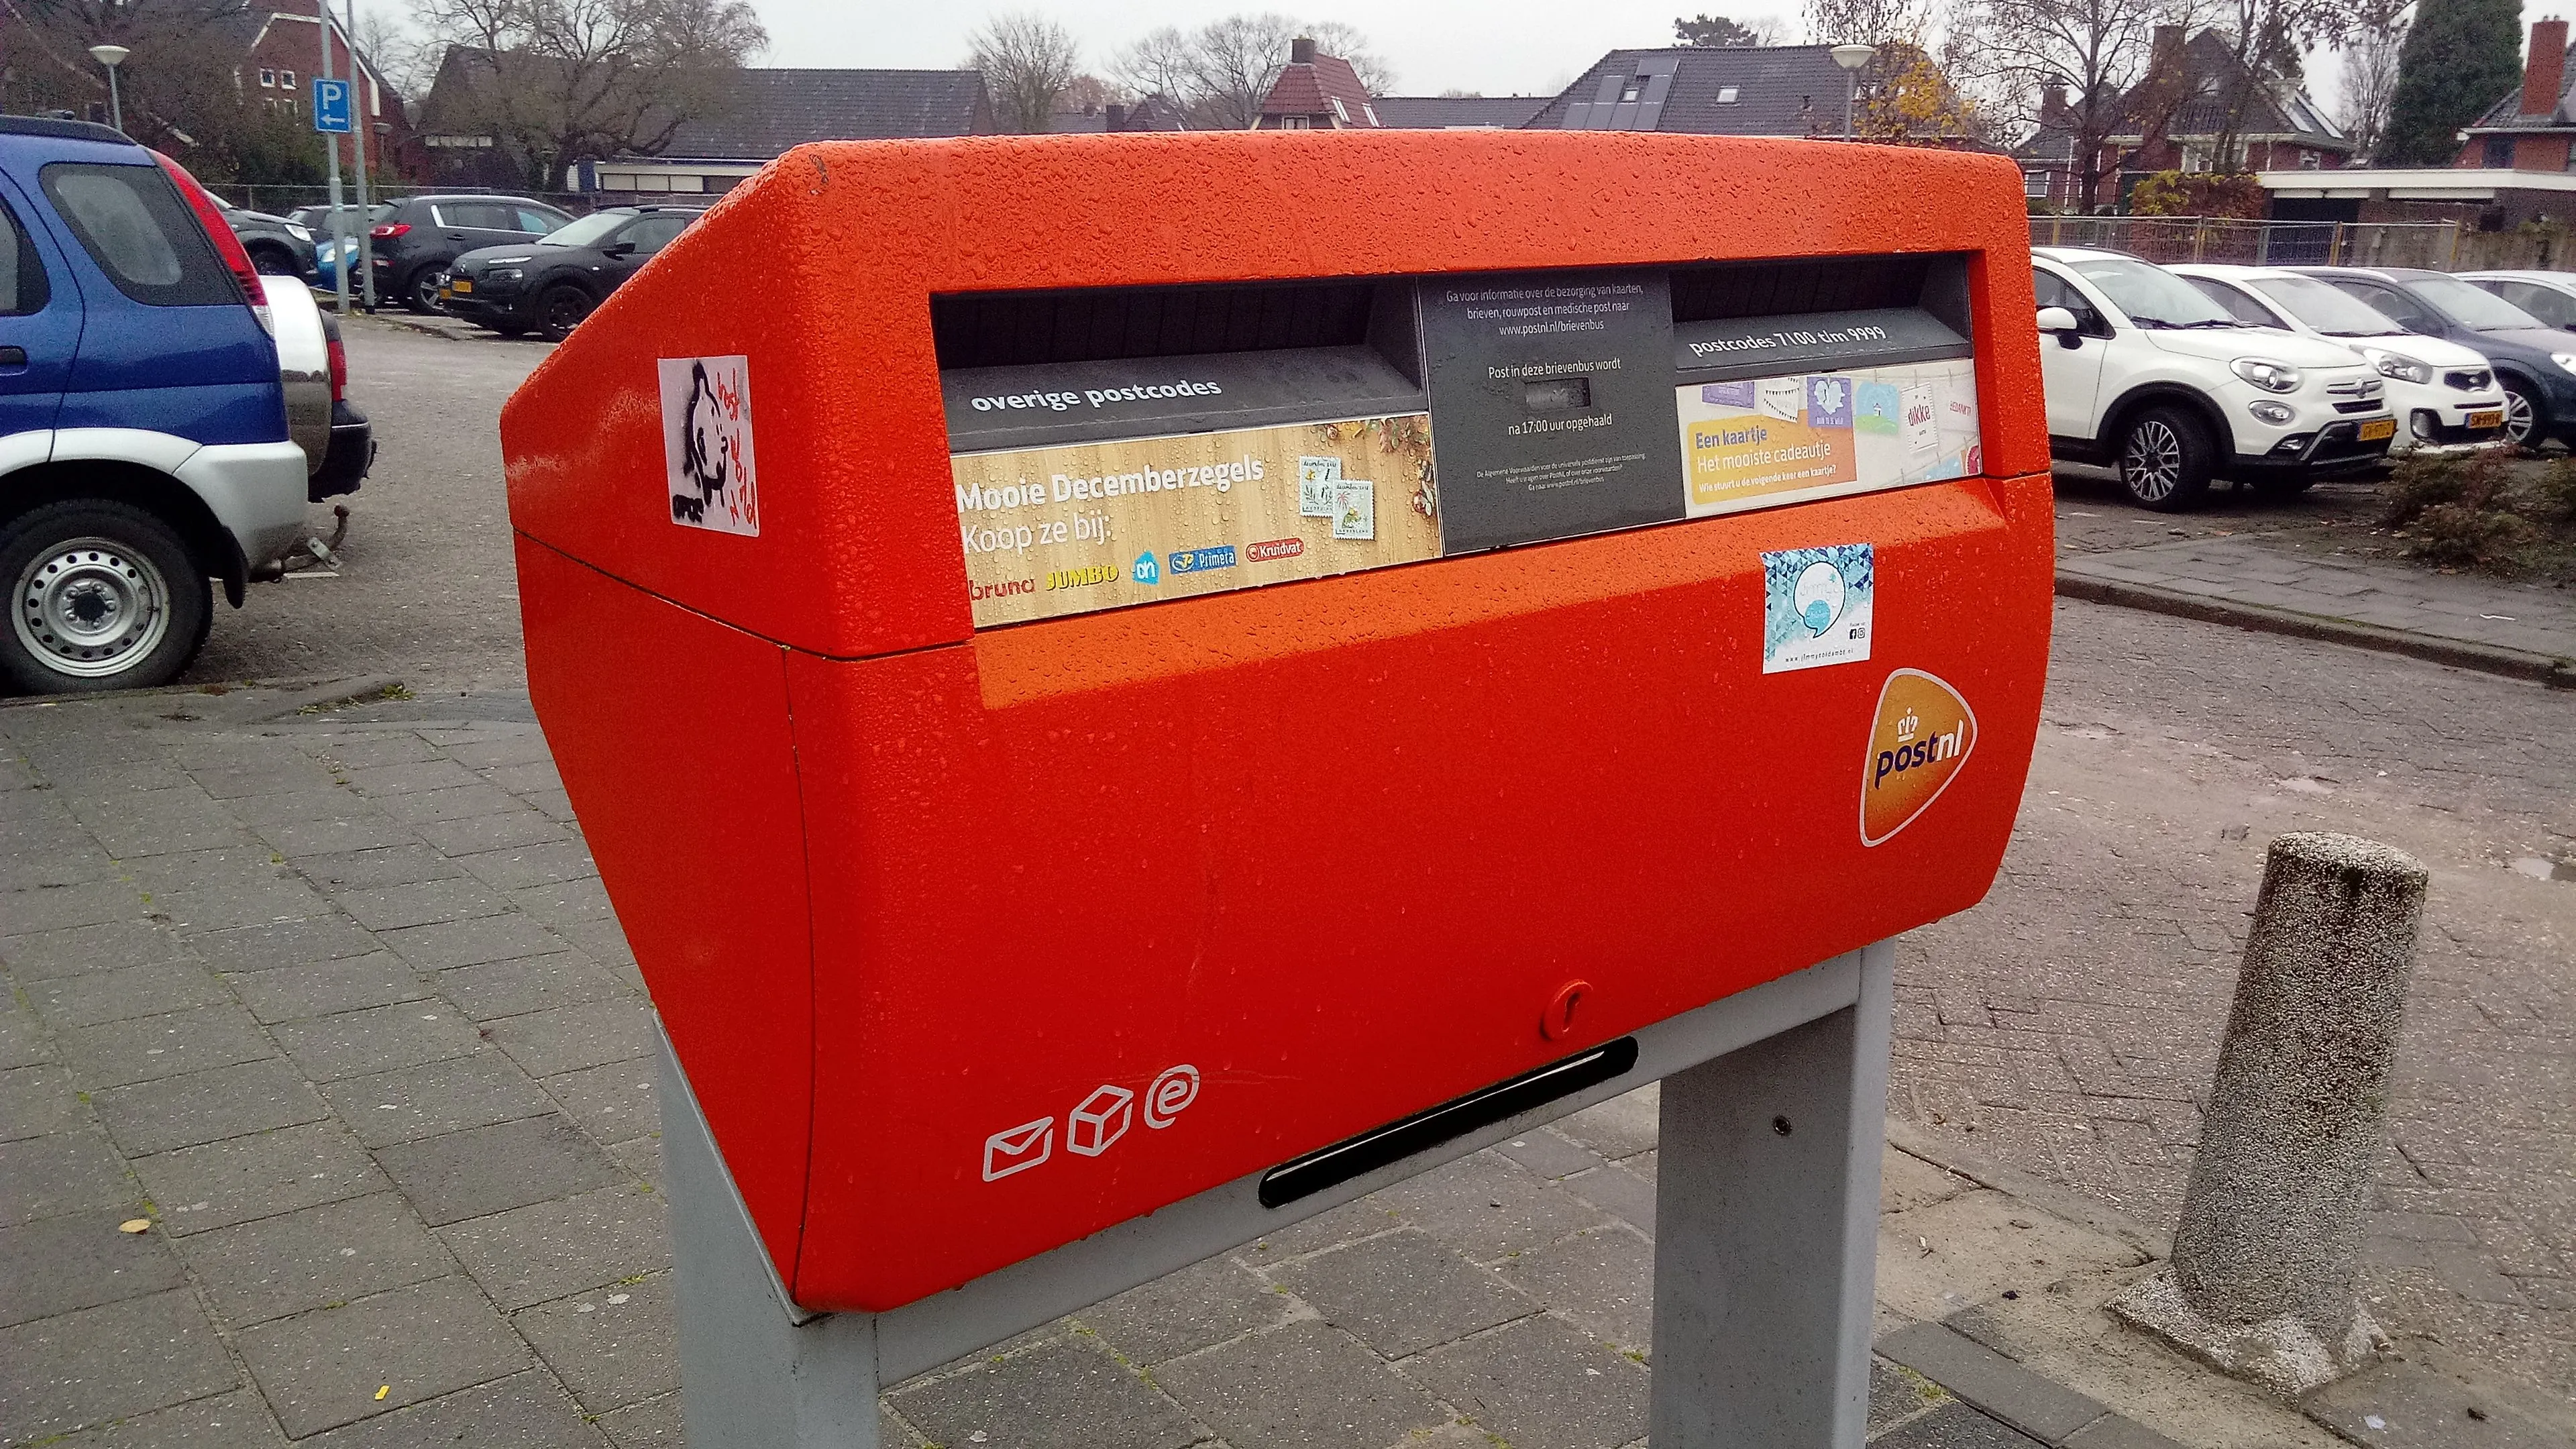 postnl orange mailbox winschoten 2018